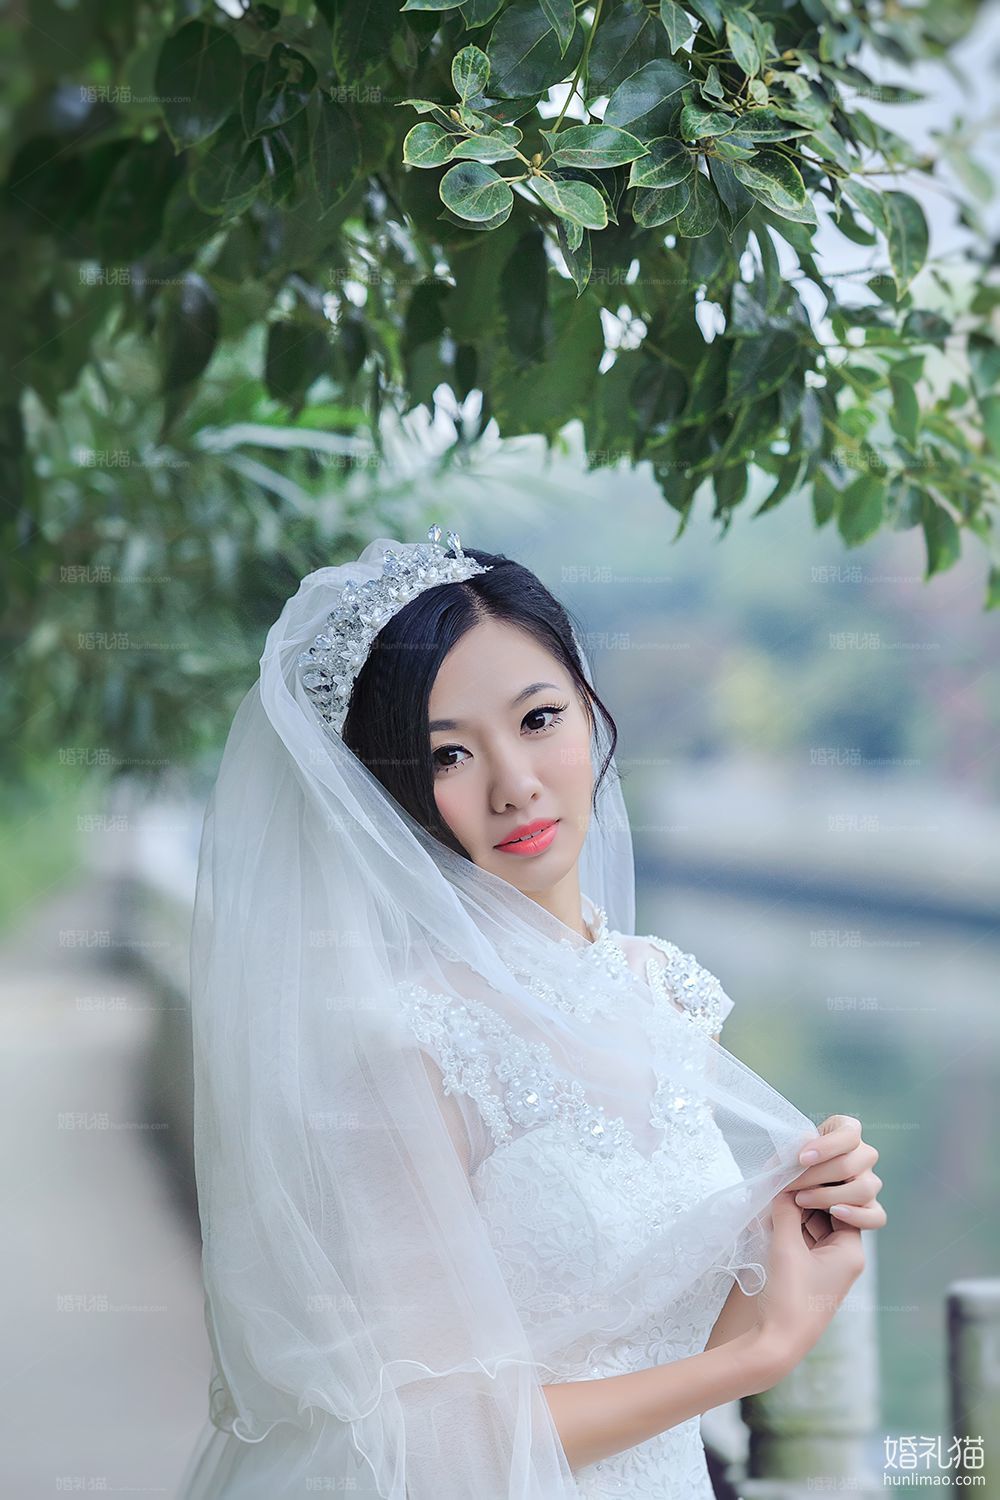 2017年8月广州结婚照,,韶关婚纱照,婚纱照图片